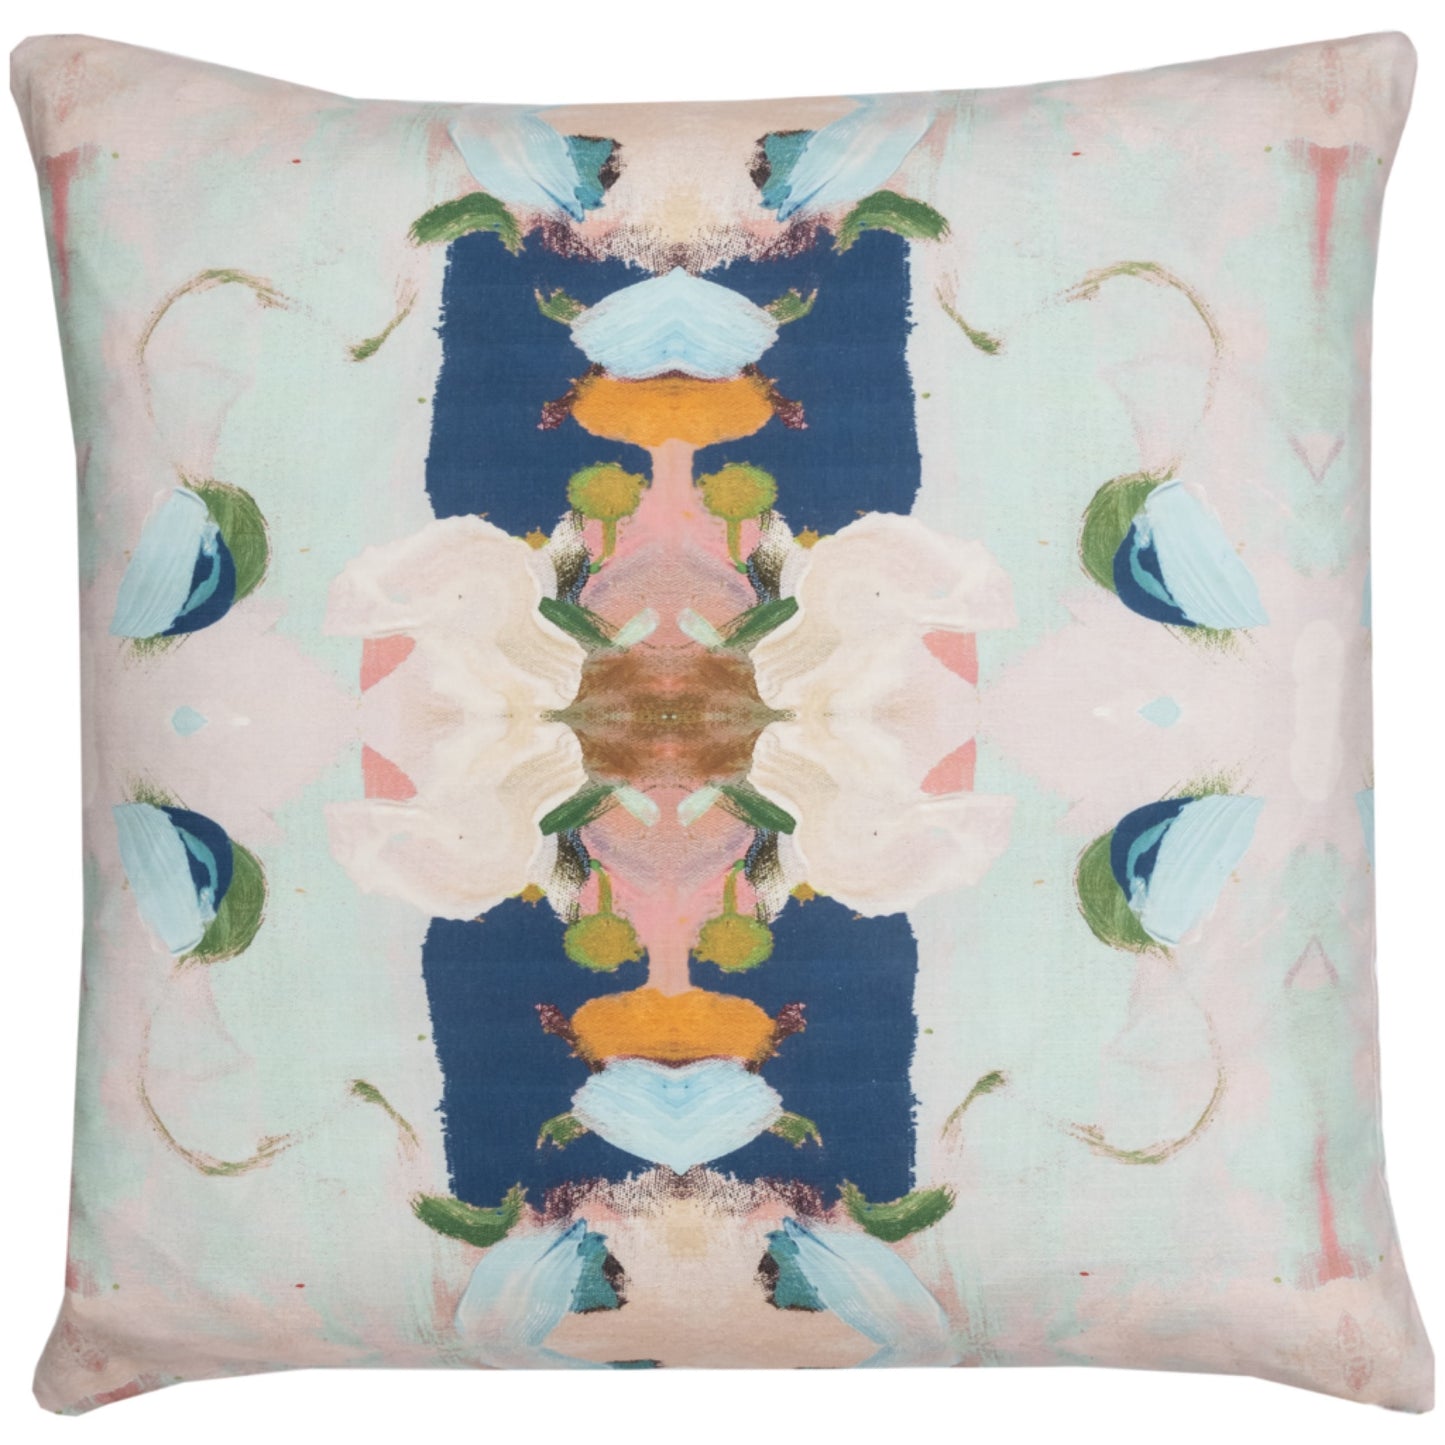 Pillow, Monet's Garden, Navy 26”x26”